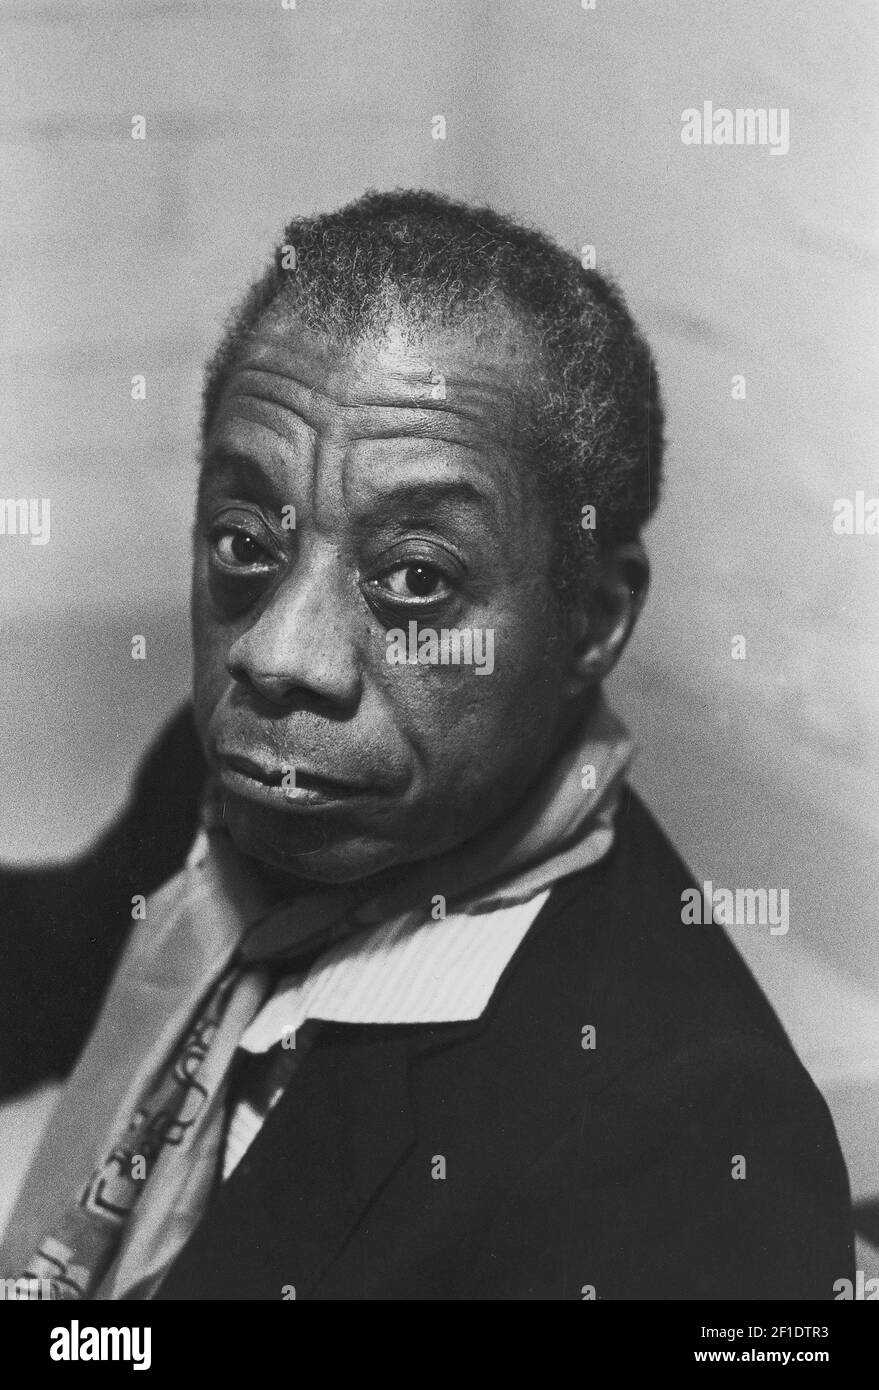 Abril de 1985; Burlington, VT, EE.UU.; Retrato del autor James Baldwin. Crédito obligatorio: Jym Wilson-USA TODAY (Foto de Jym Wilson-USA Today Network/USA Today Network/Sipa USA) Foto de stock